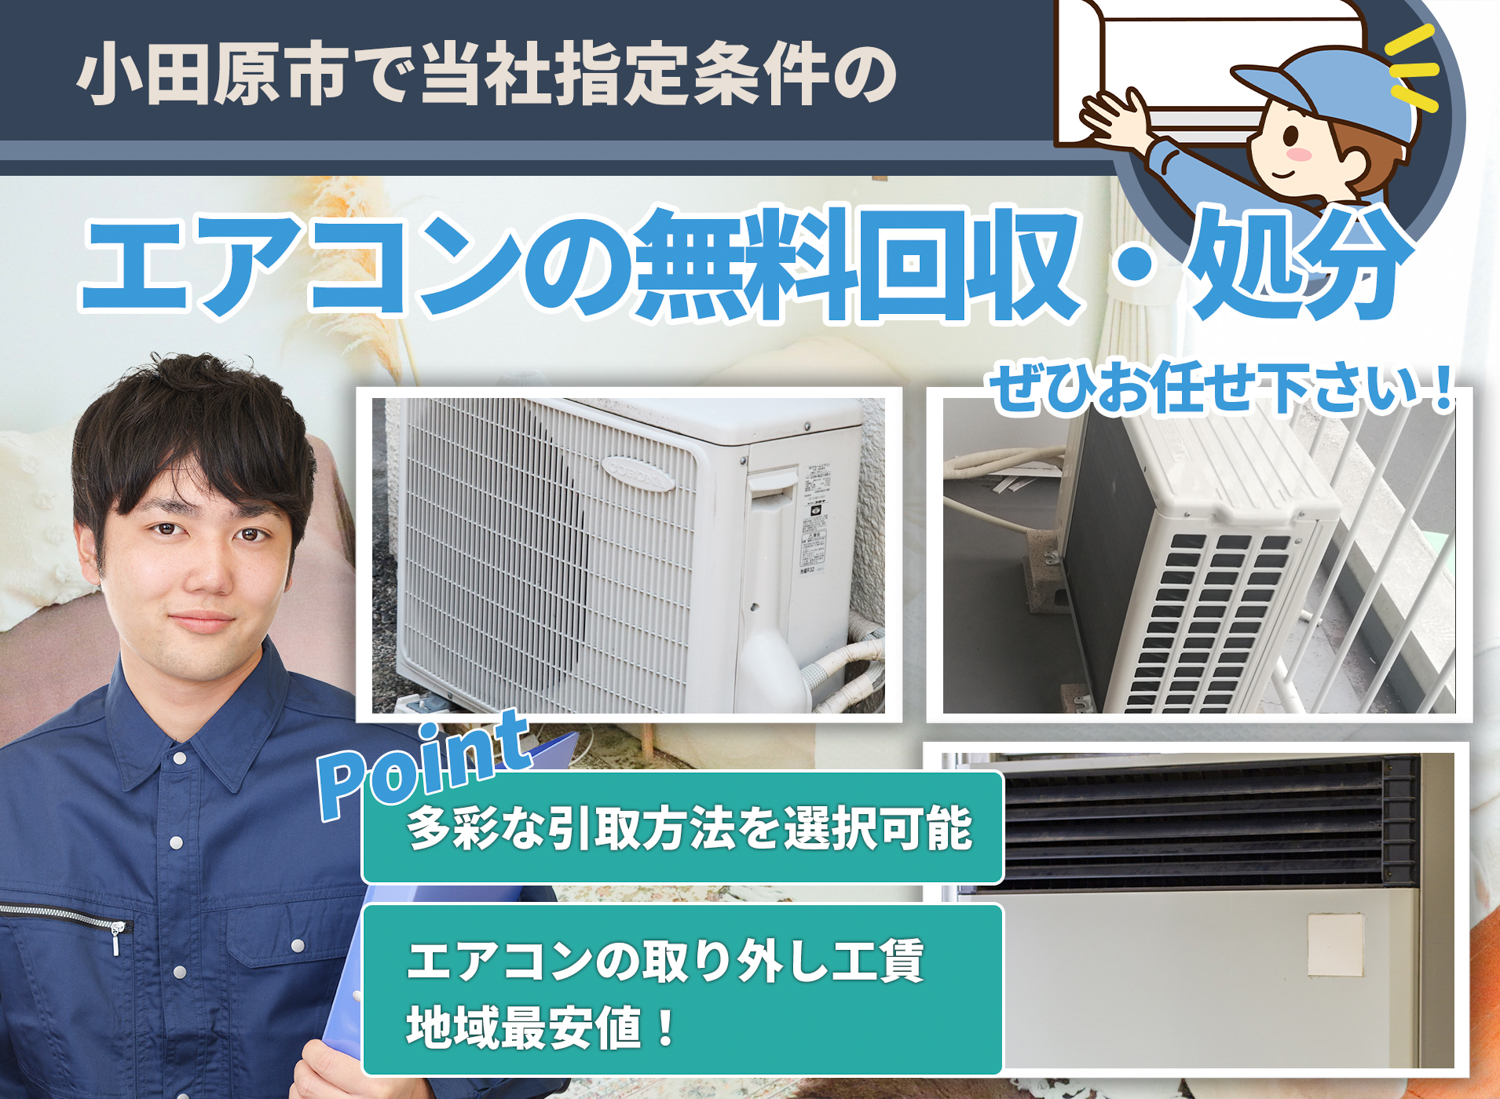 小田原市のサービスで地域一番を目指すエアコン無料回収処分隊のエアコン無料回収サービス